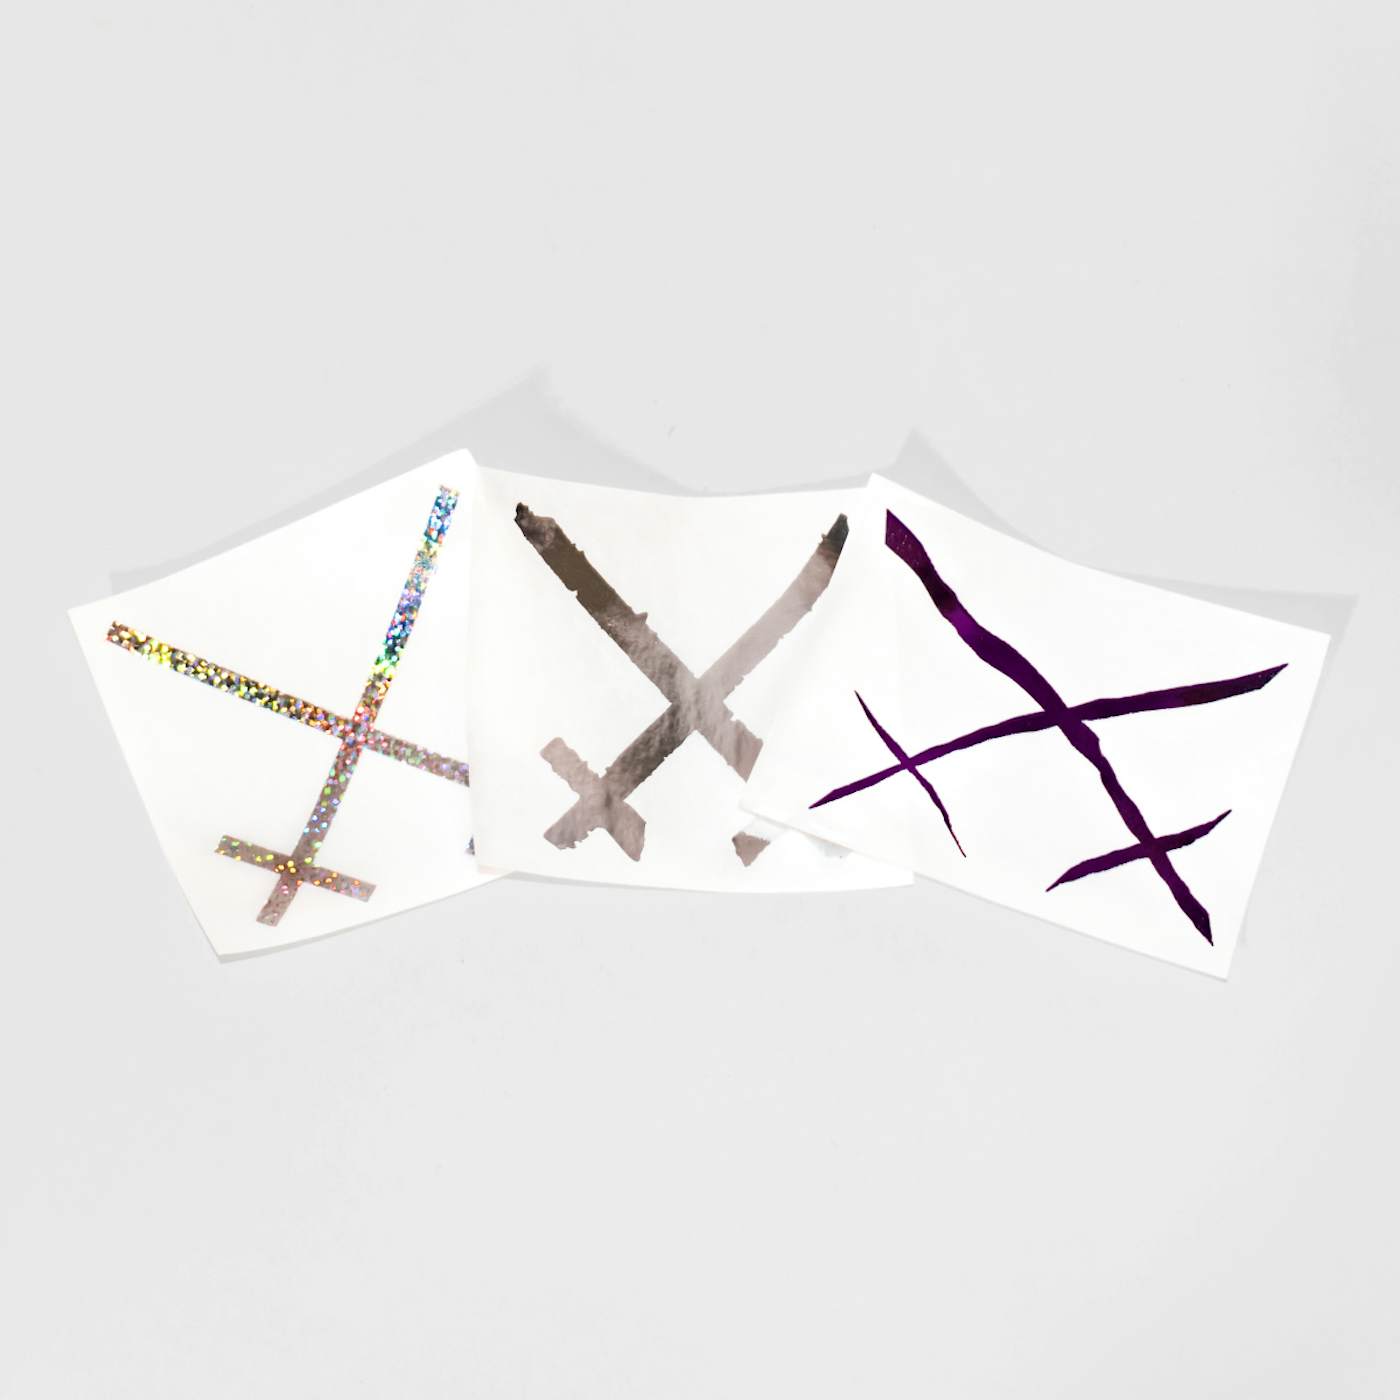 Xiu Xiu Die-Cut Logo Sticker Pack (Set of 3)